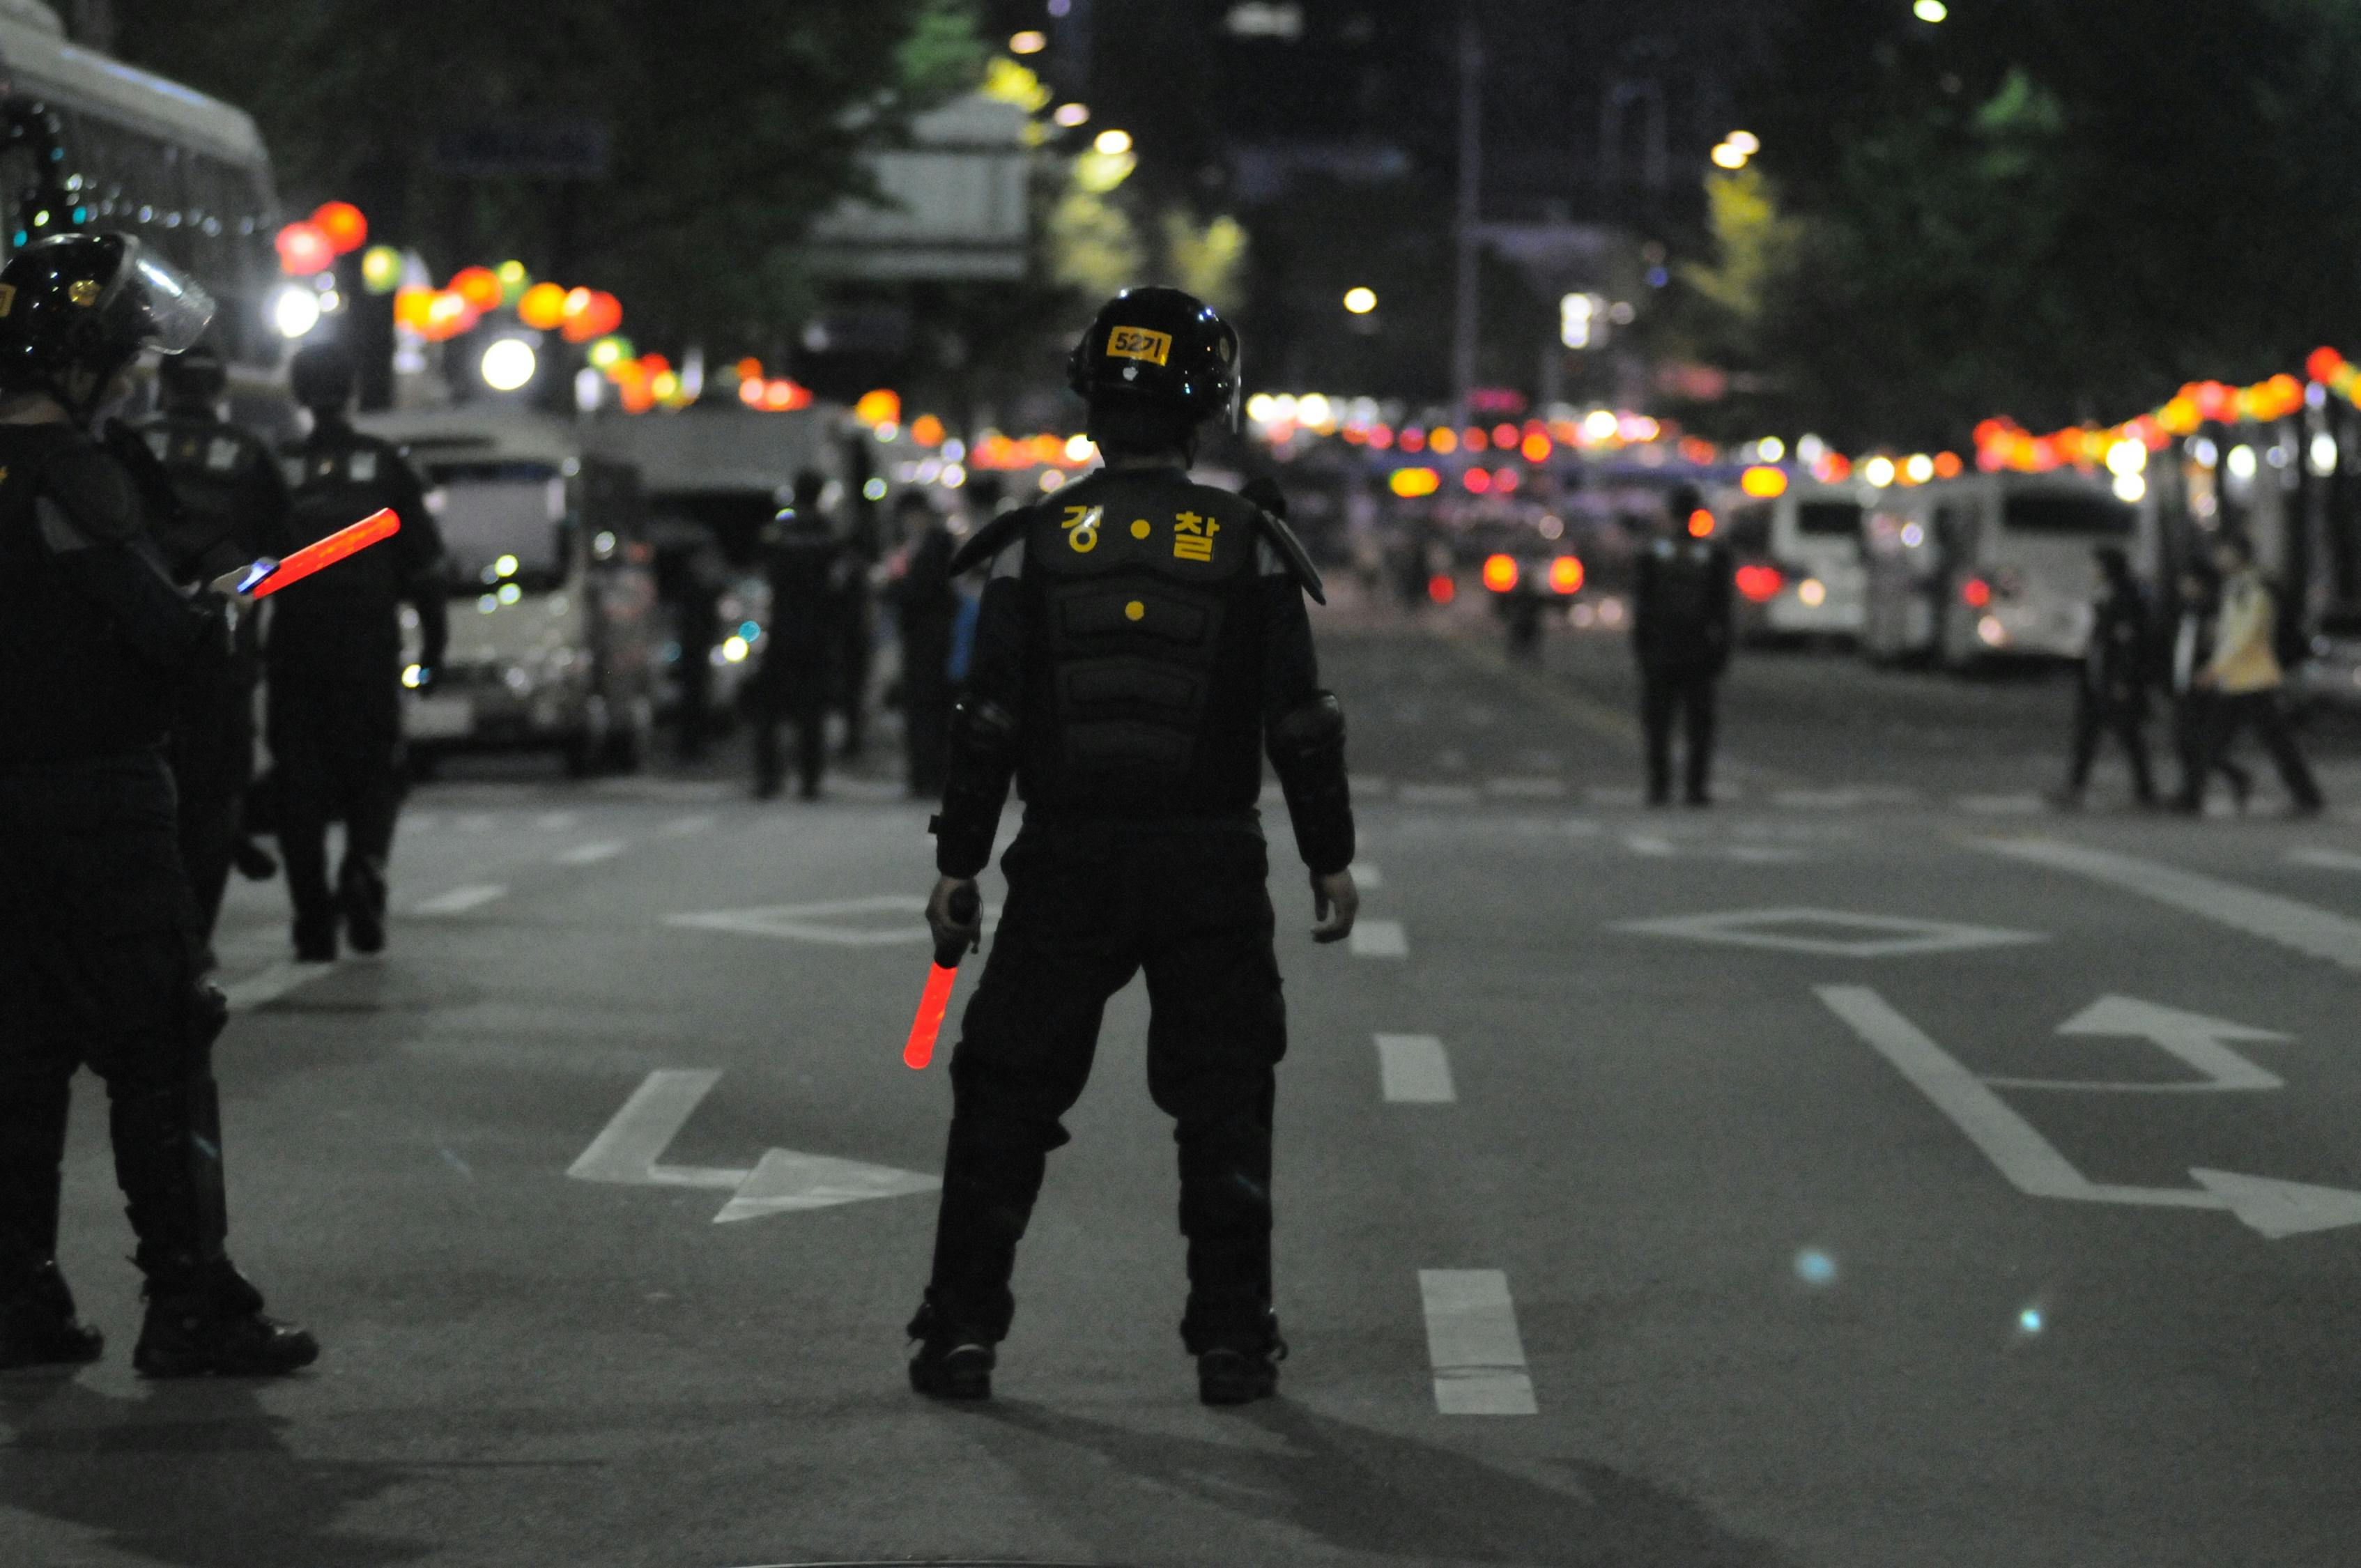 Politie Die Zich Tijdens De Nacht Op Grijs Asfalt Bevindt